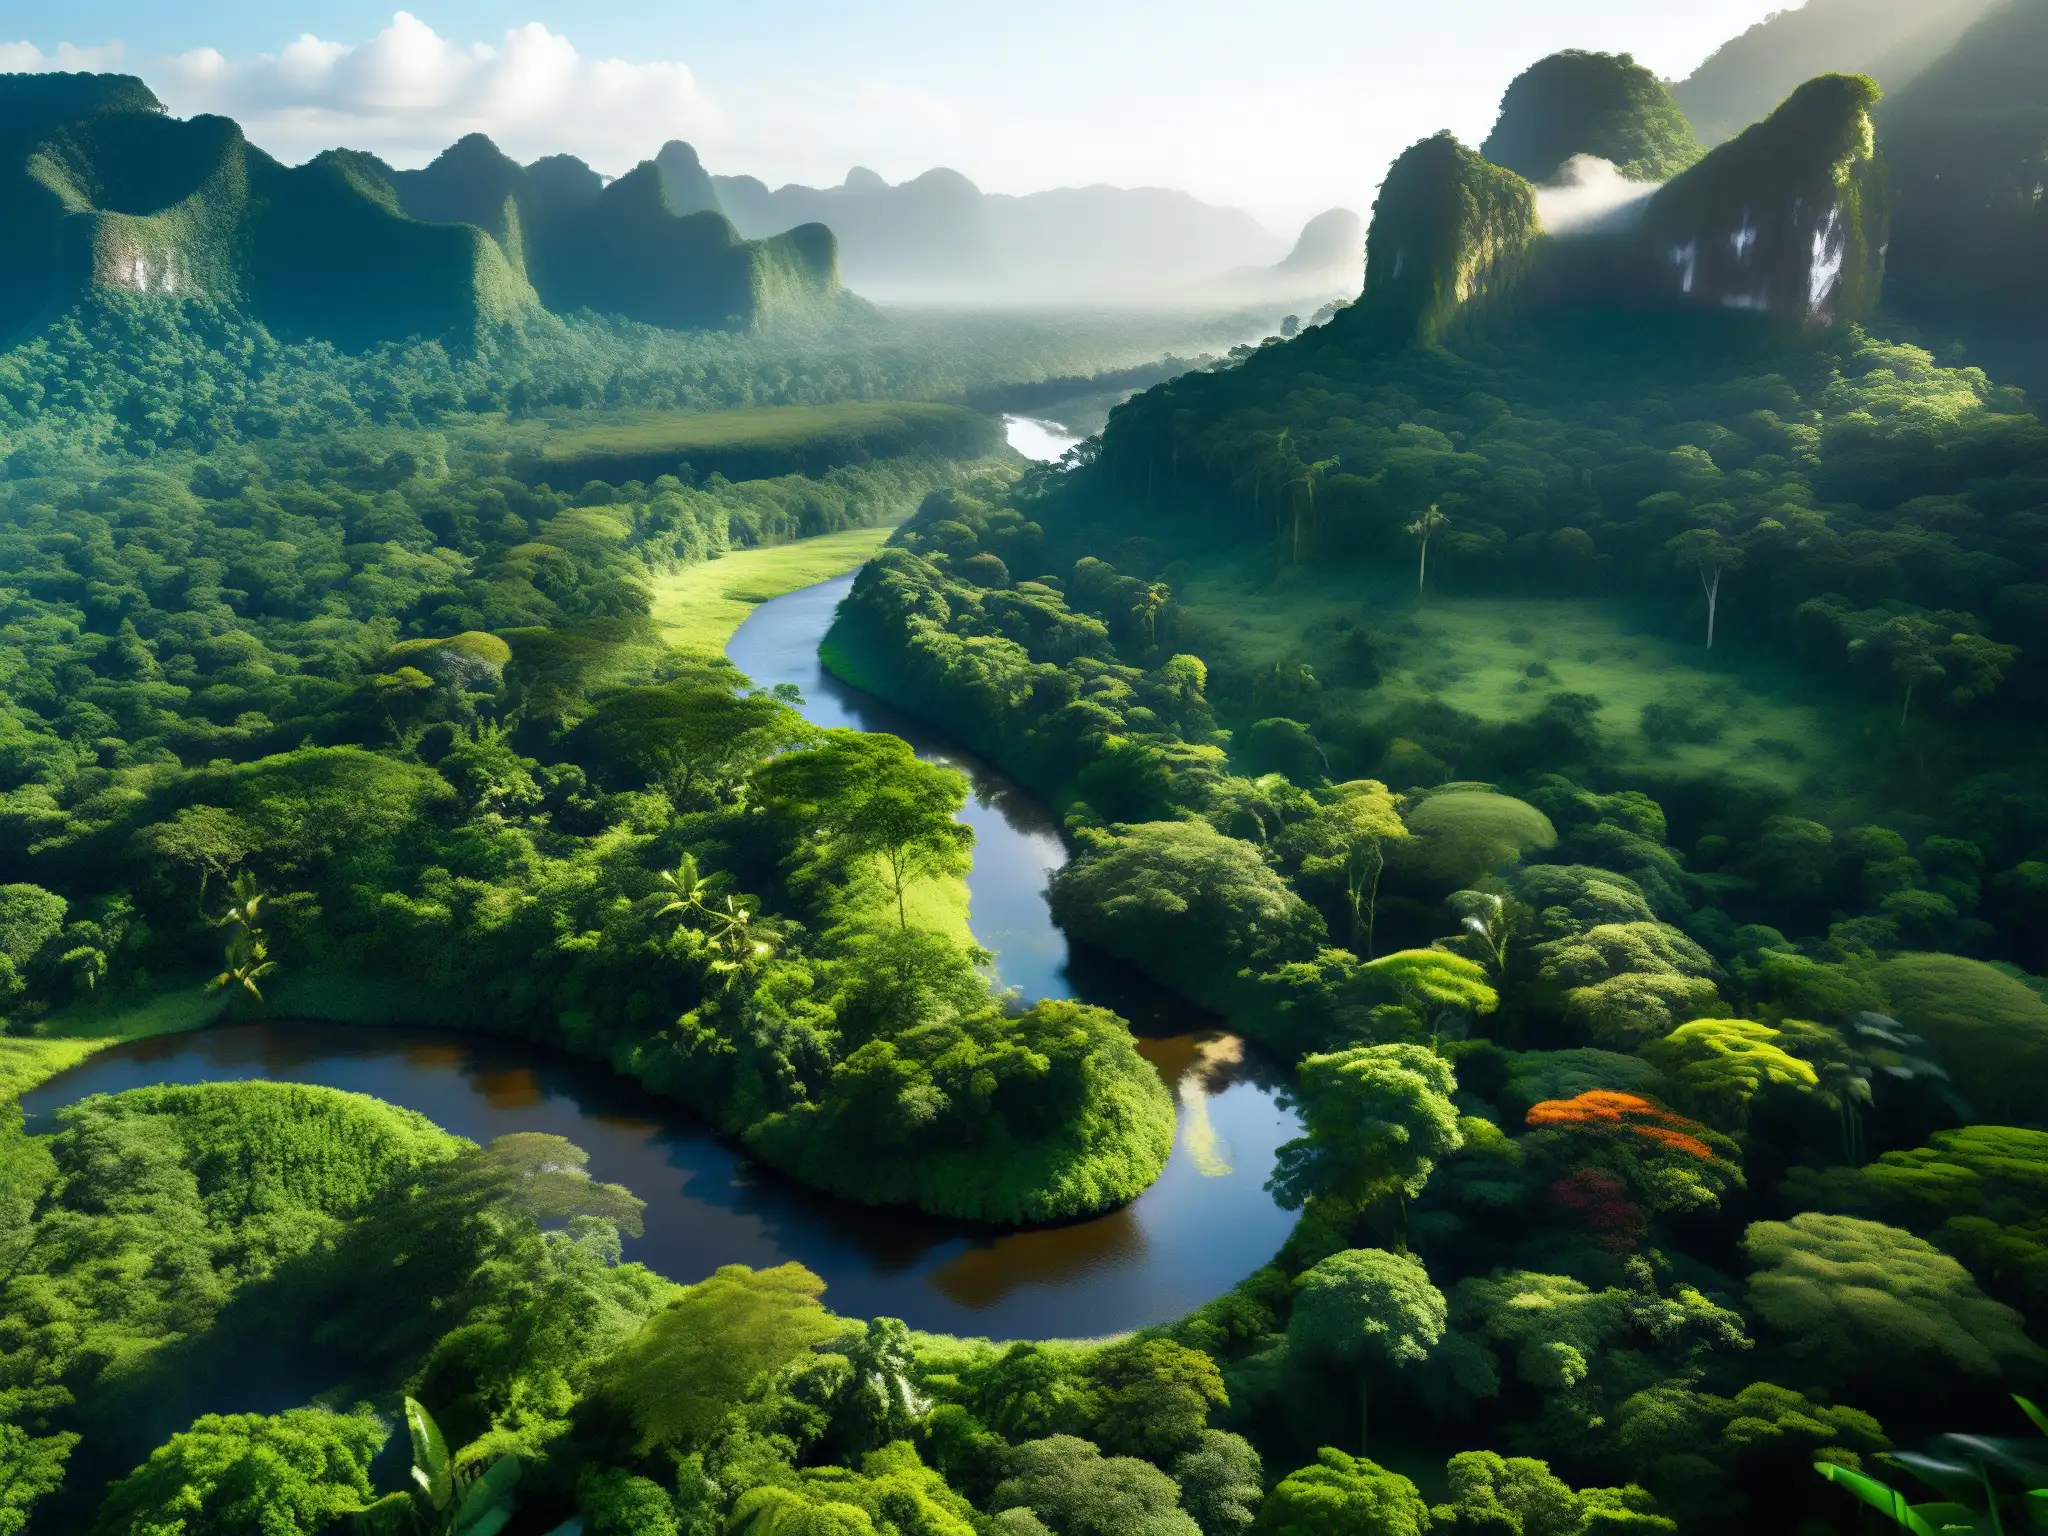 Escena exuberante de la selva amazónica con árboles imponentes, follaje vibrante y un río serpenteante